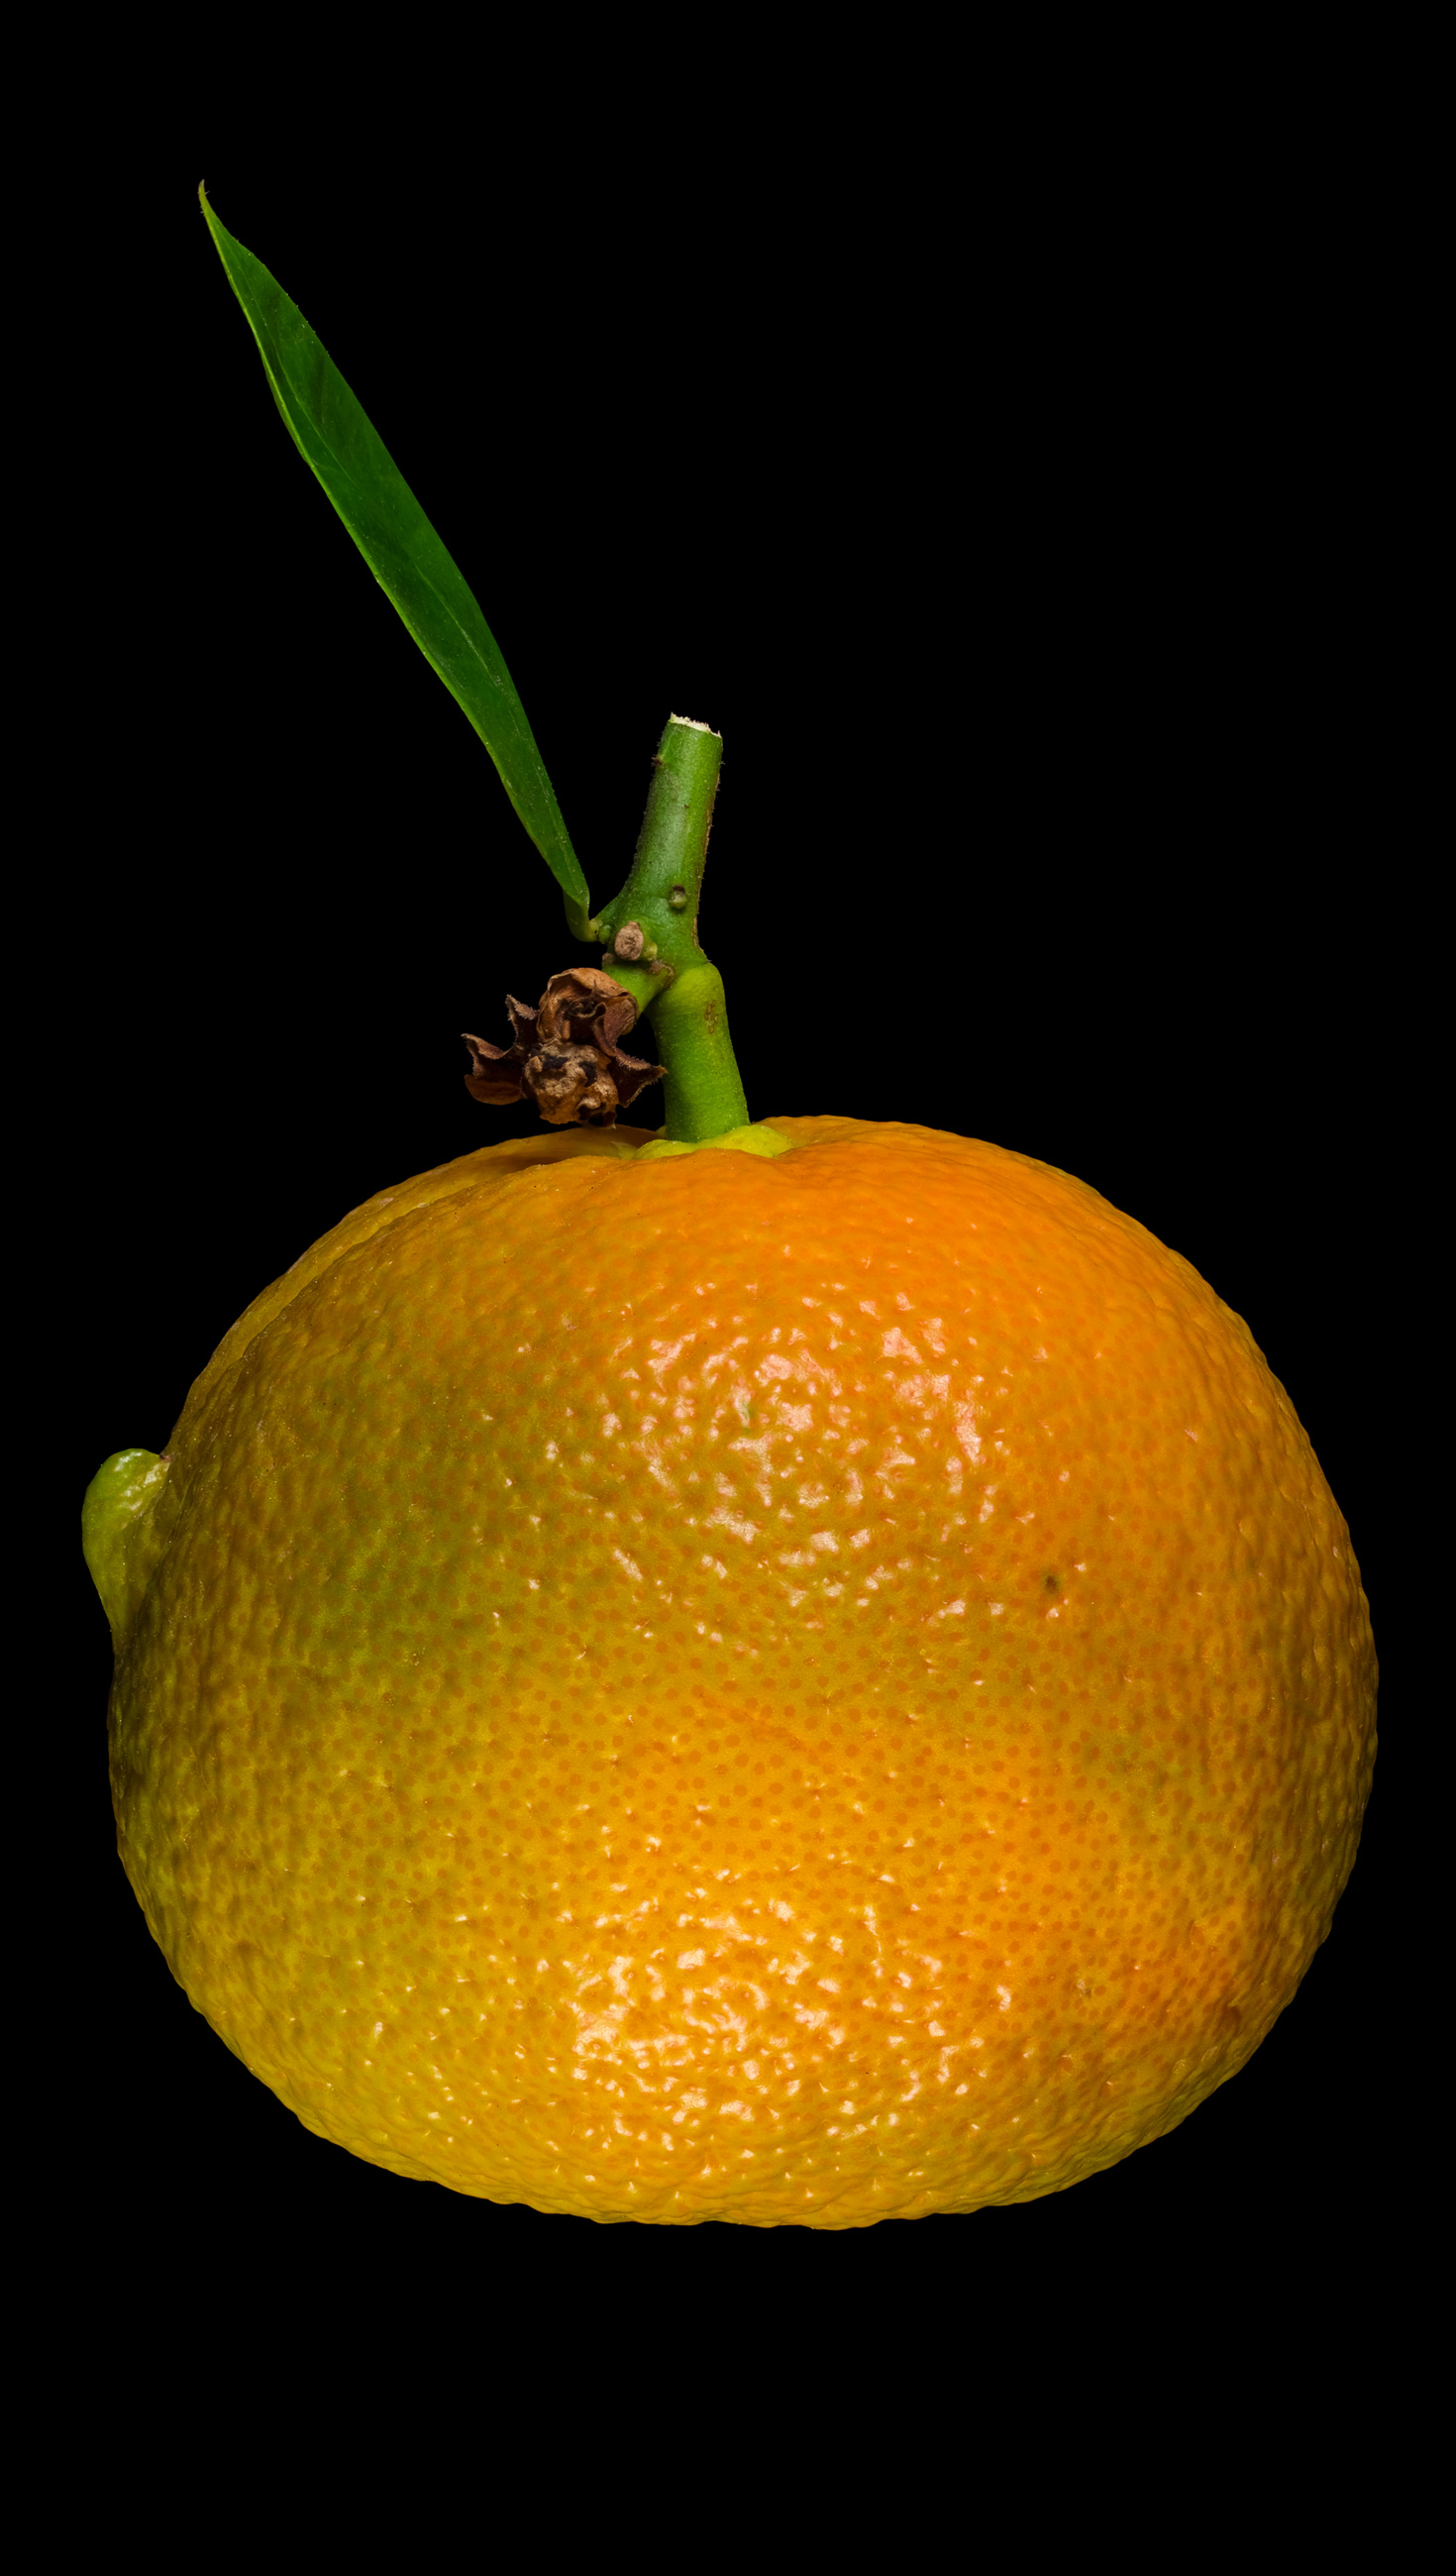 Die Gehörnte Bitterorange: Citrus × aurantium ‚Corniculata‘